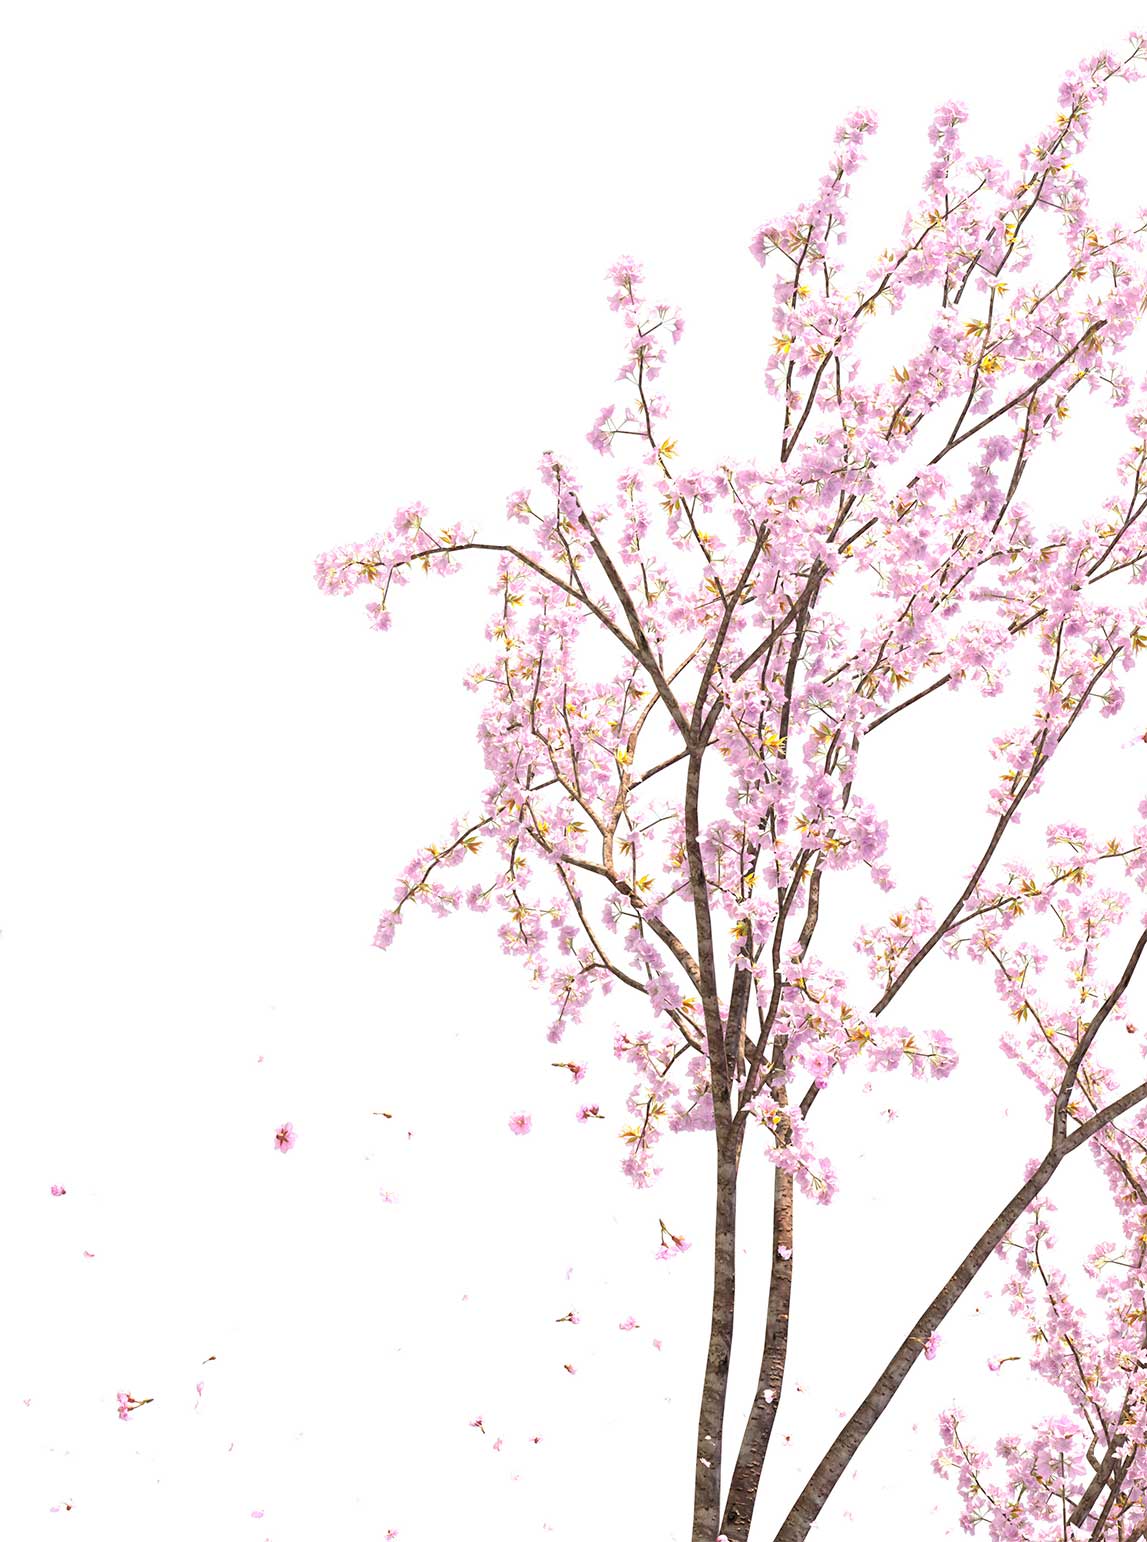 Ramas de sakura o flores de cerezo para comunicar belleza y limpieza con la imagen corporativa de Kiré estética en Valladolid